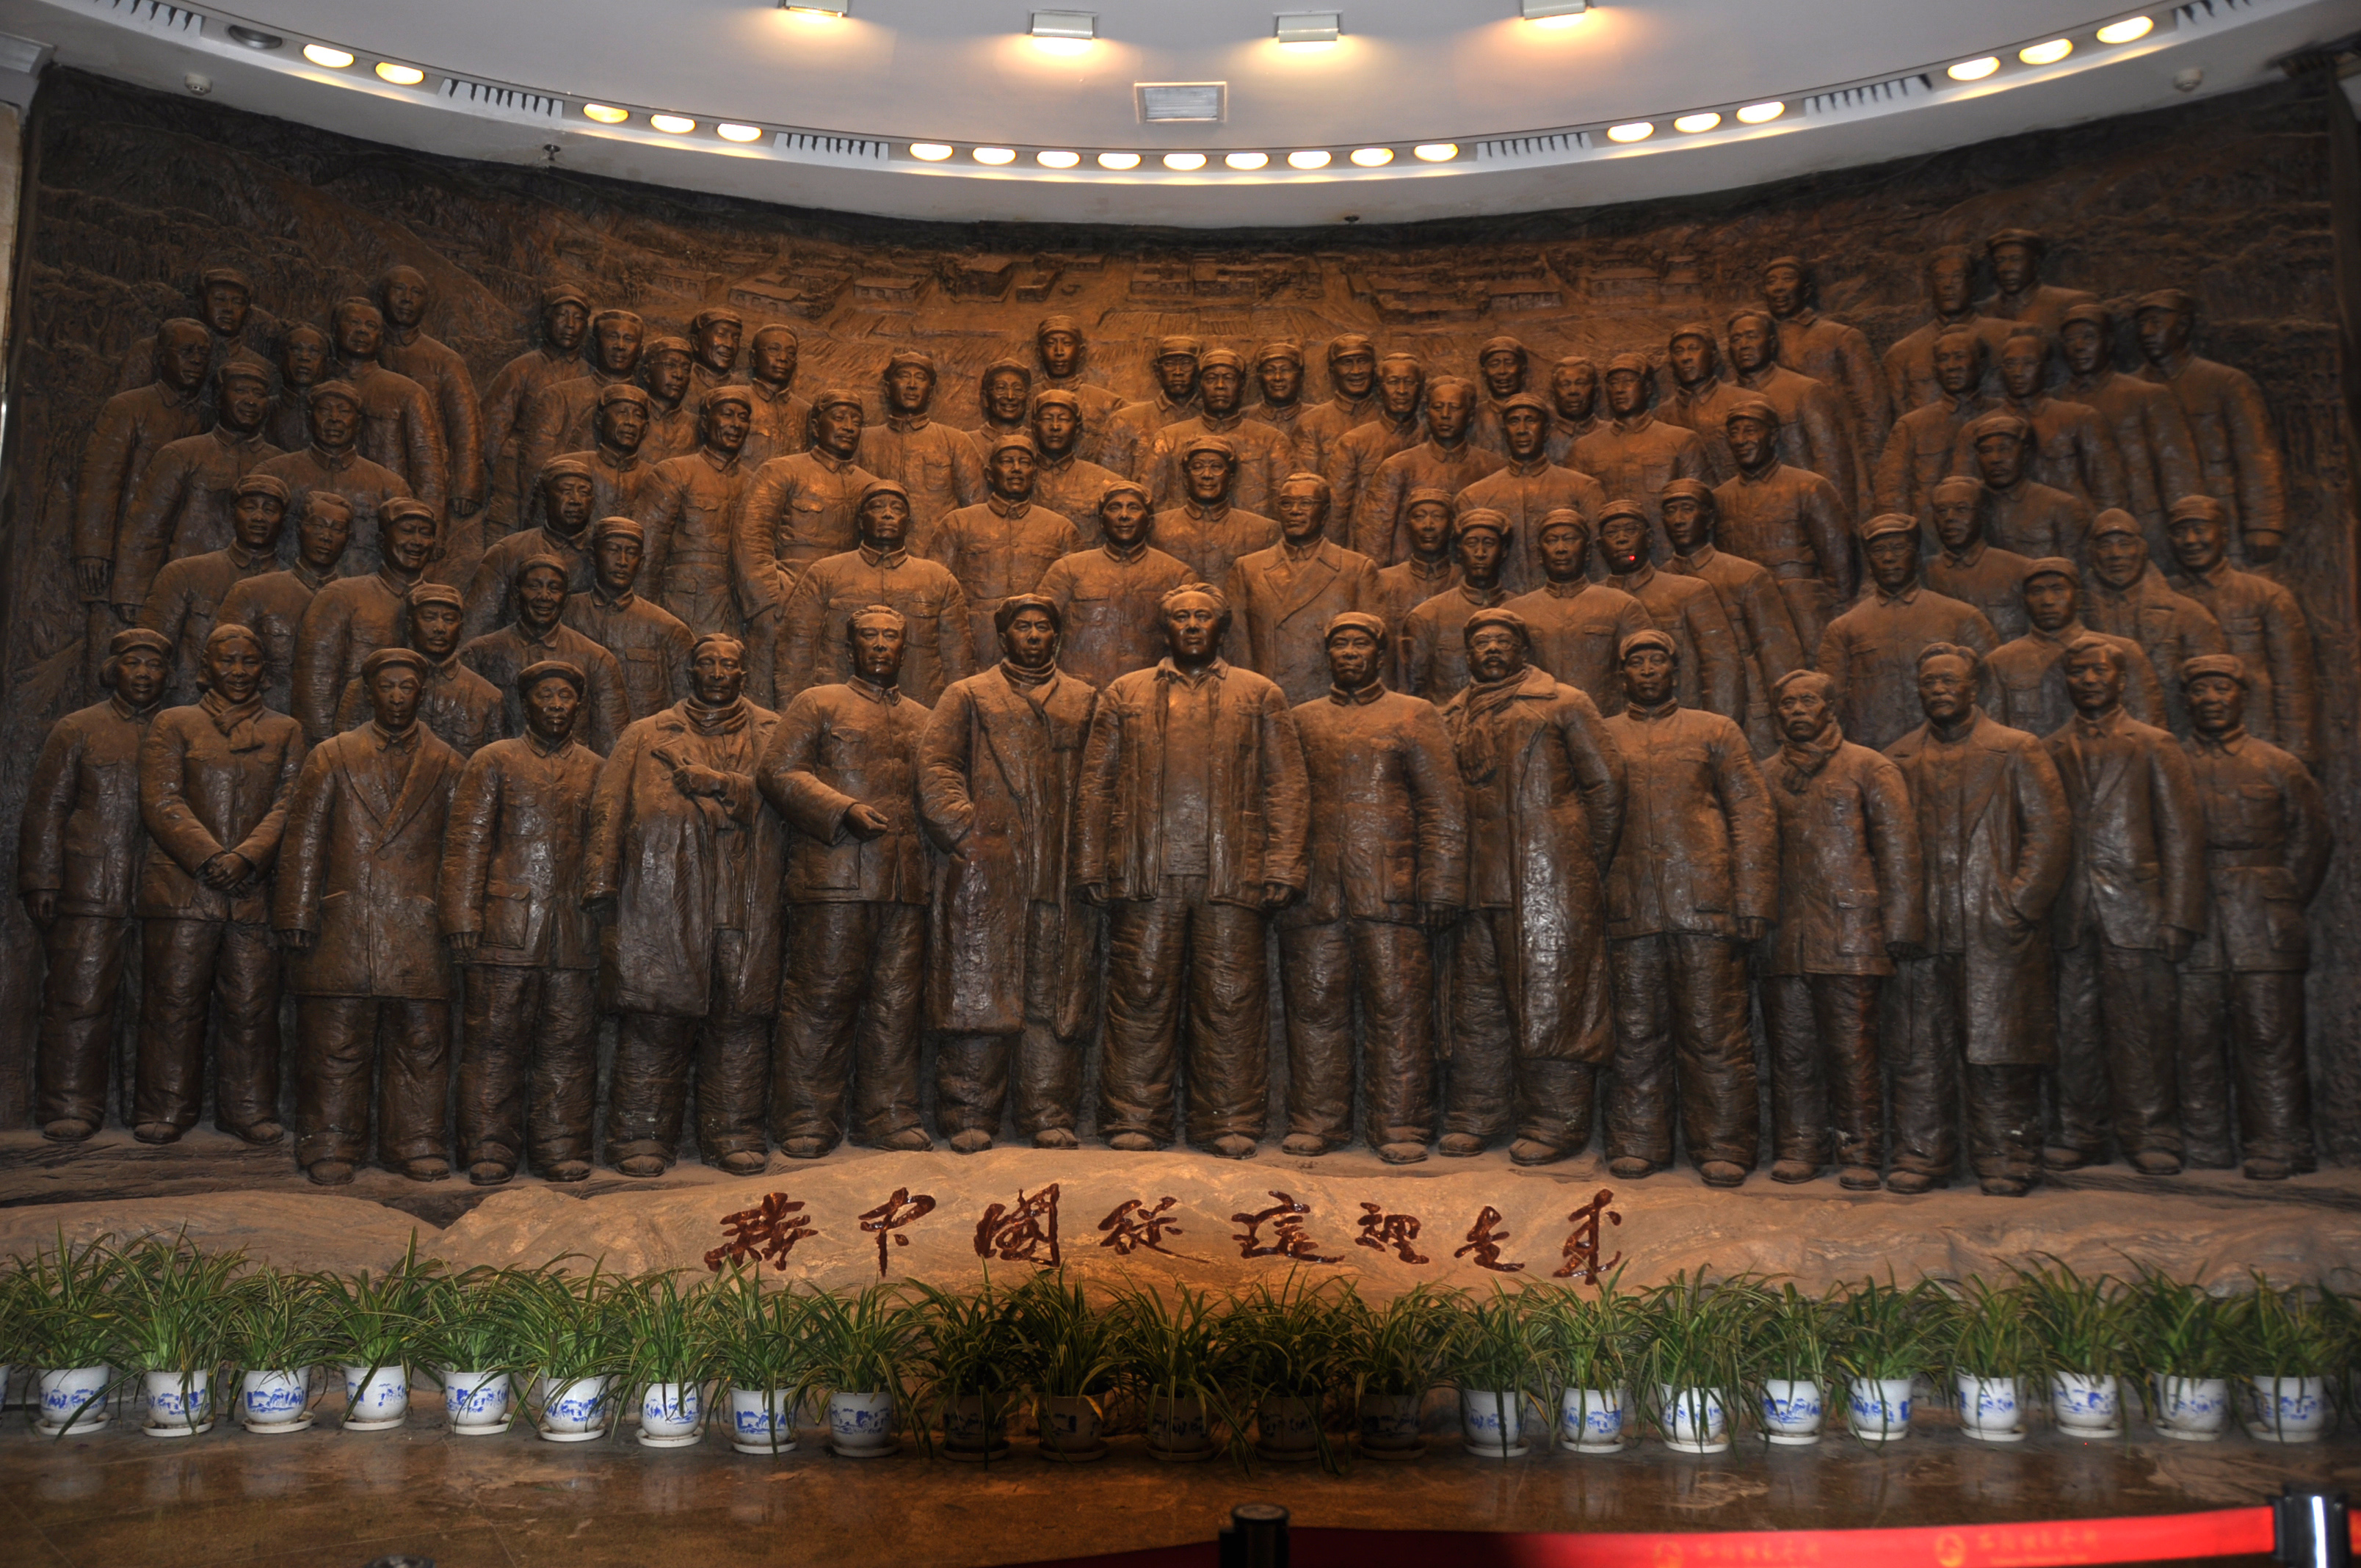 西柏坡纪念馆的大厅内正面墙上有一组巨大的人物浮雕,雕塑生动再现了